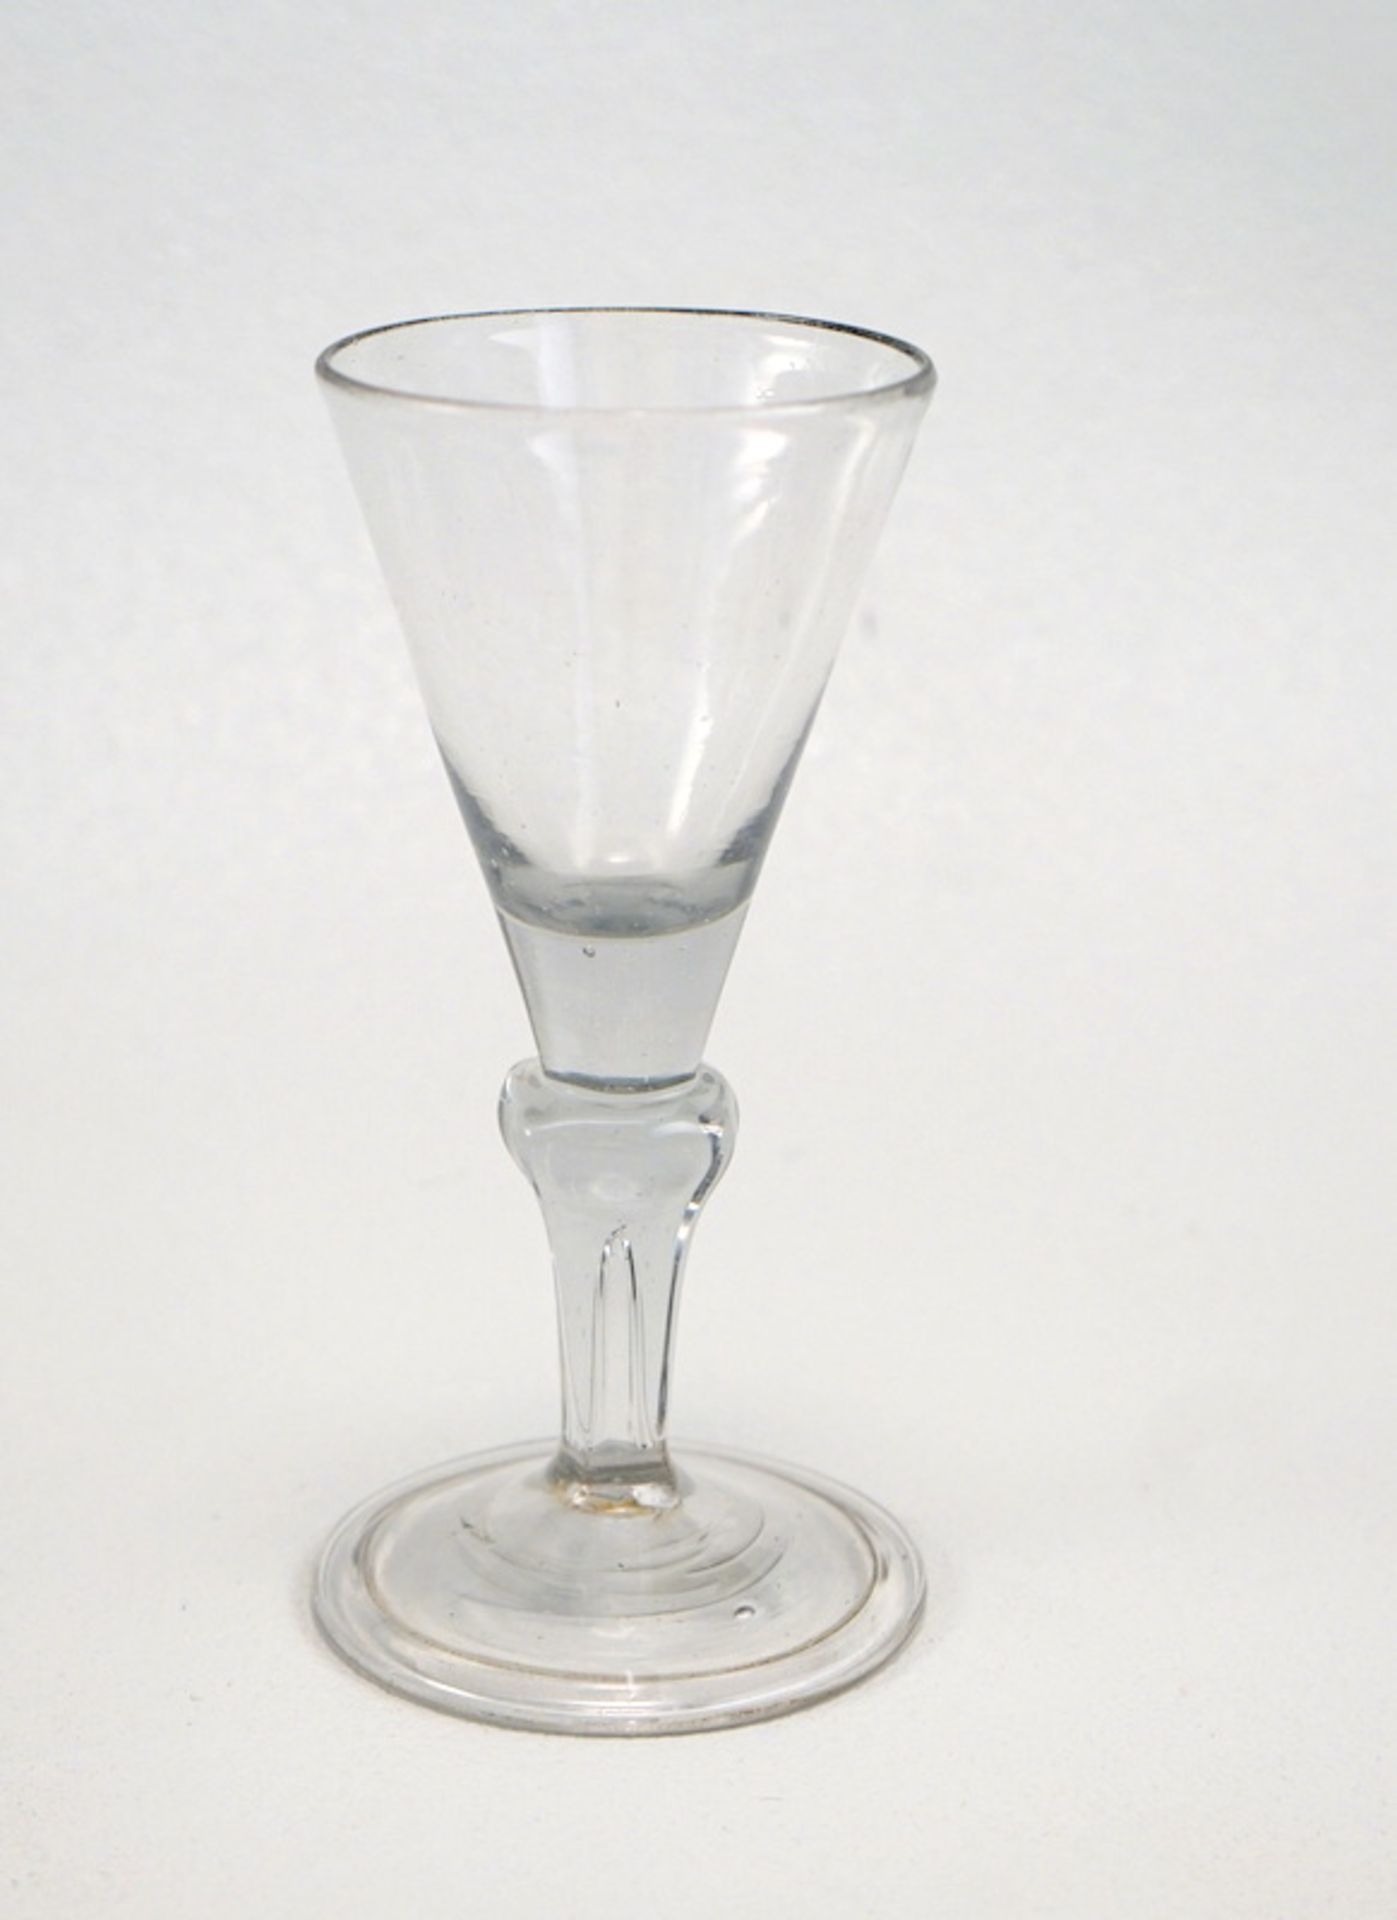 Trichterglas, wohl norddeutsch,1. Hälfte 18.Jhd.,farbloses Glas, Stand mit umgelegtem Rand und